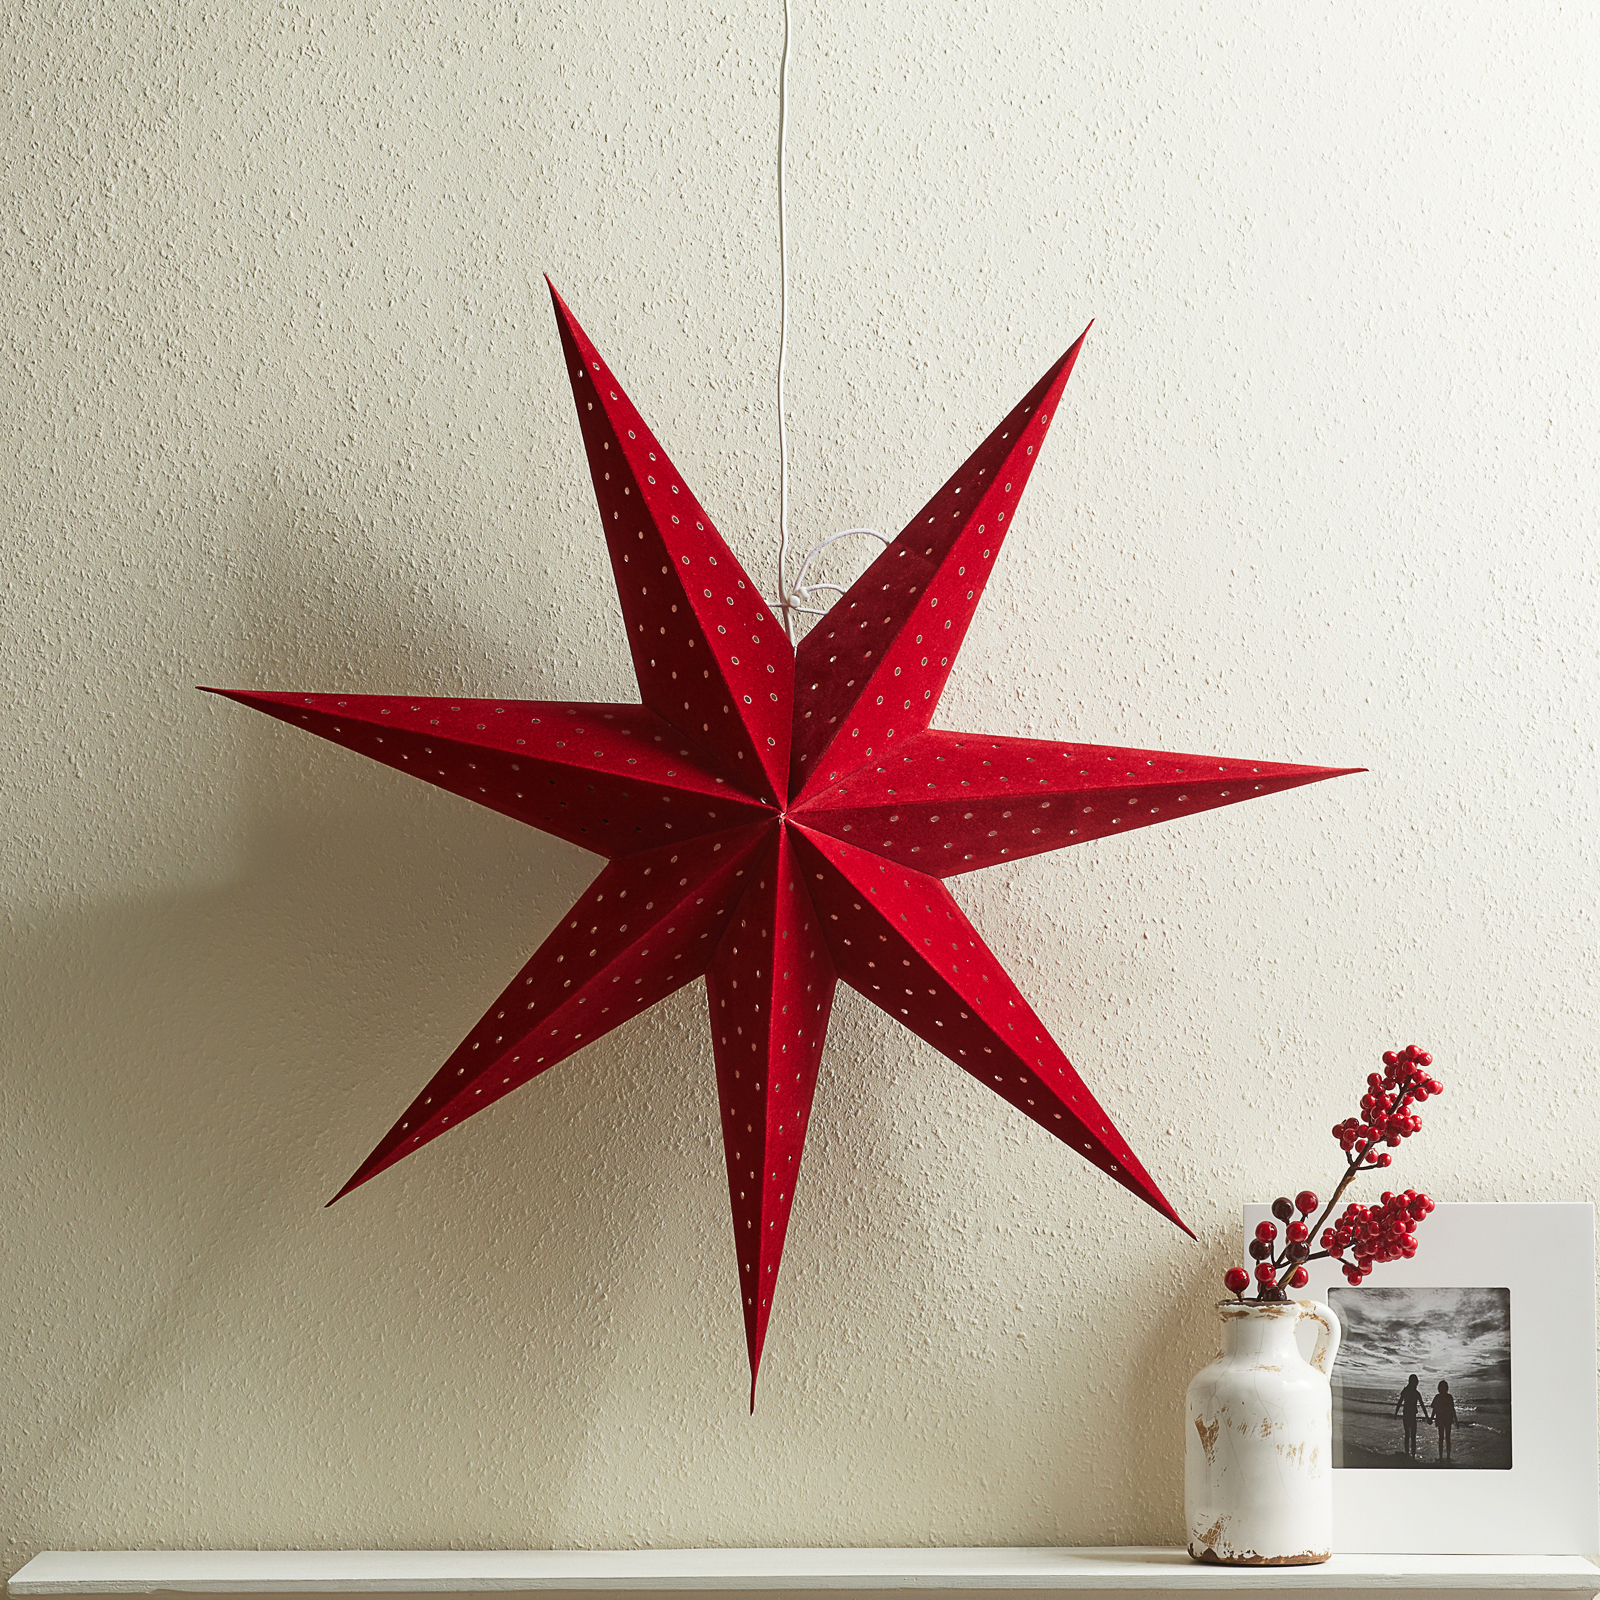 Star Clara for hanging, velvet look Ø 75 cm, red